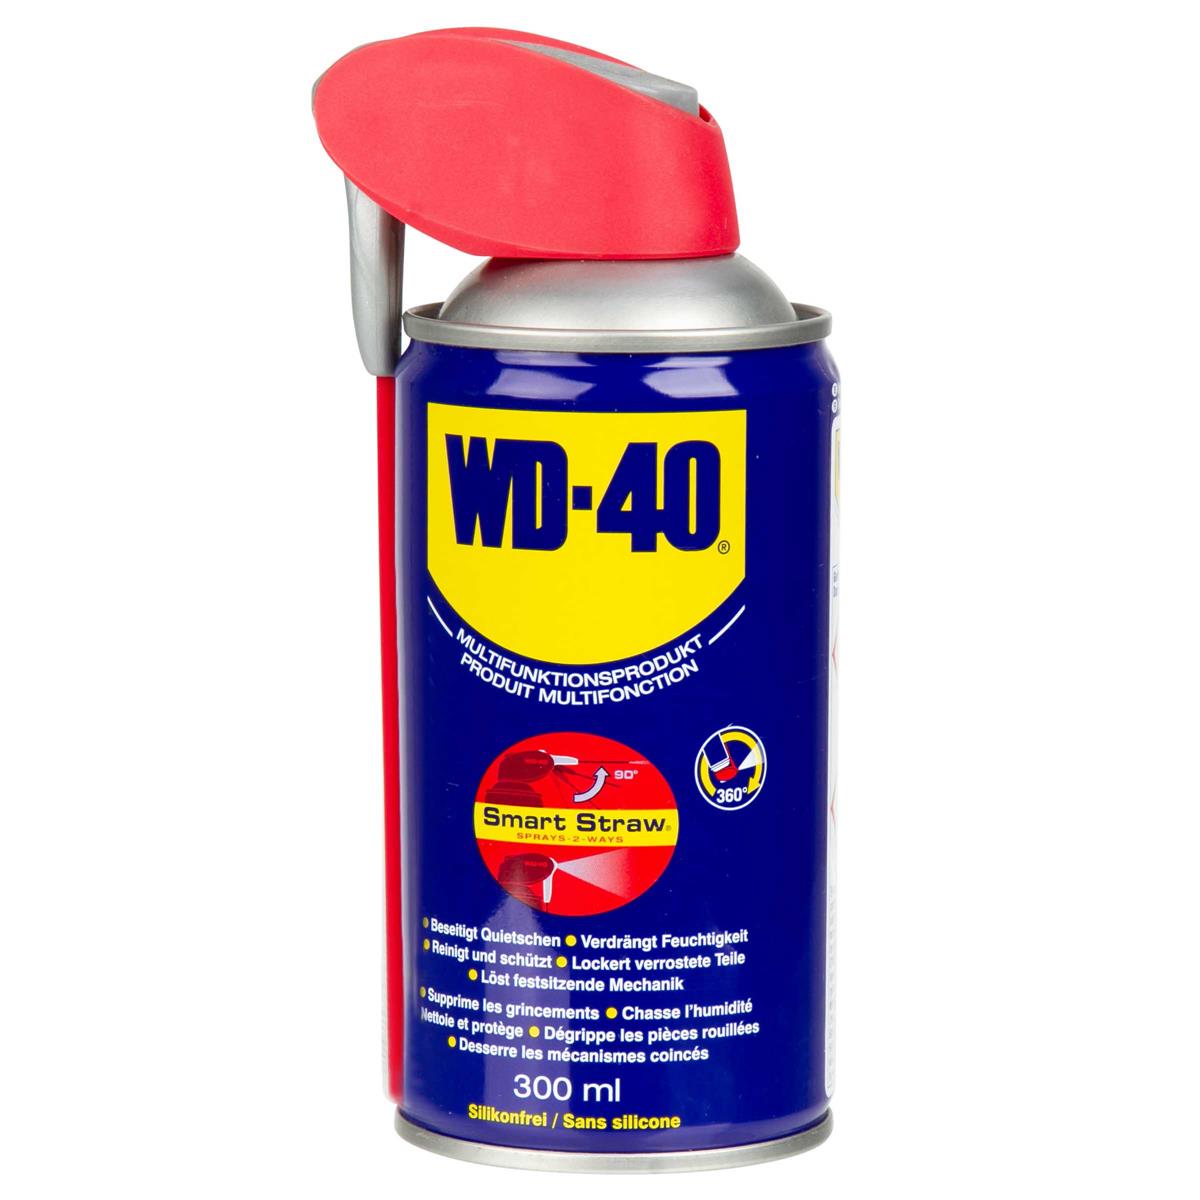 WD-40 Prodotto Multifunzionale Smart Straw 300 ml